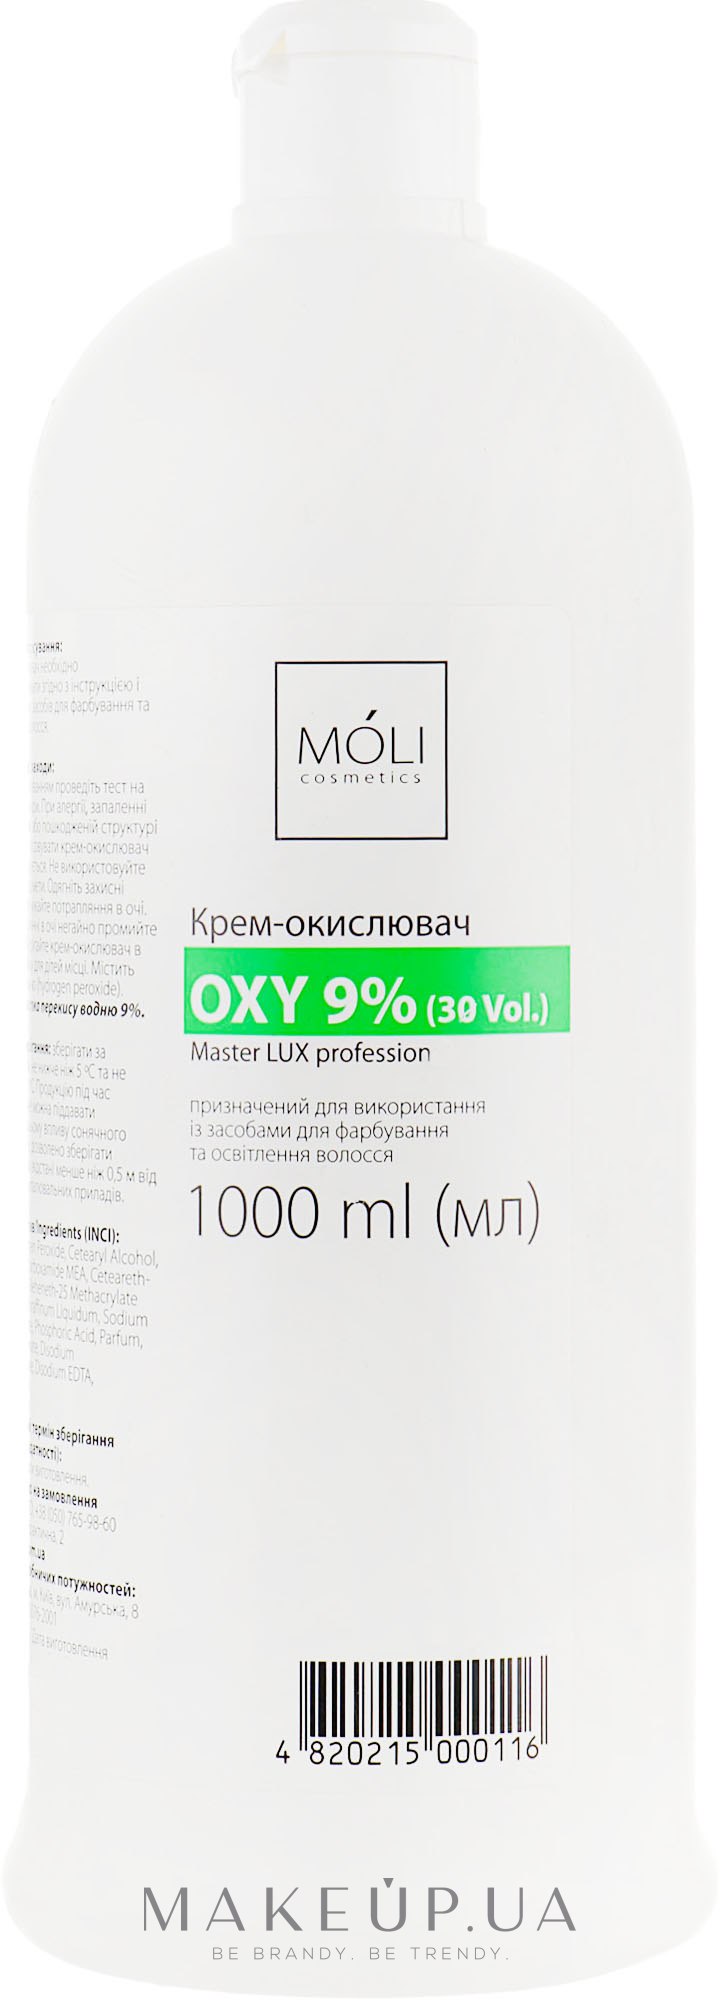 Окислительная эмульсия 9% - Moli Cosmetics Oxy 9% (30 Vol.) — фото 1000ml